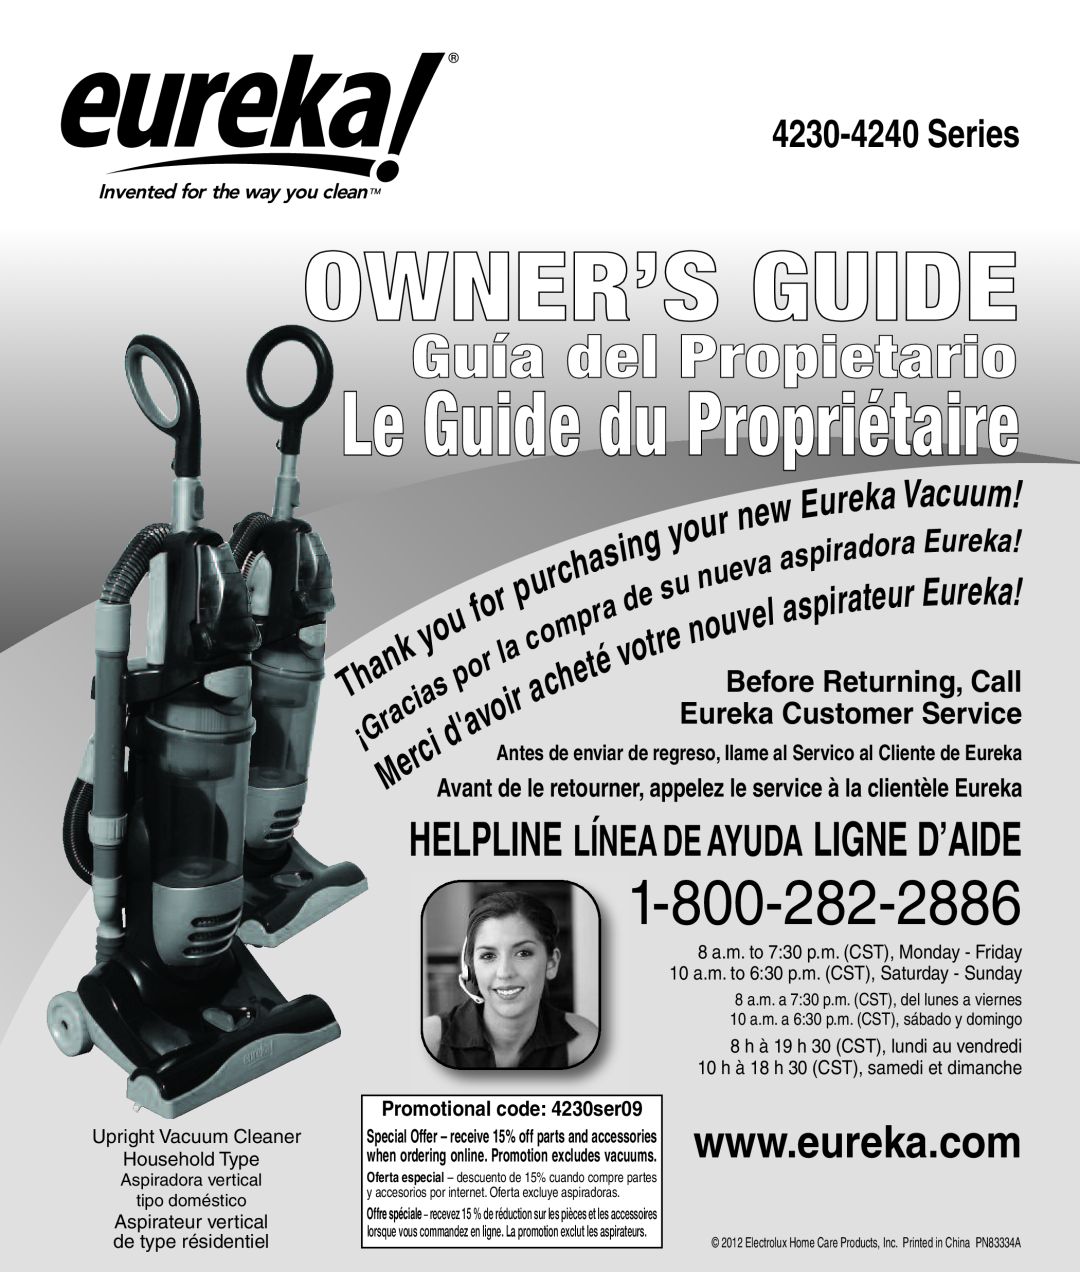 Eureka 4242A manual Series, Owner’S Guide, Le Guide du Propriétaire, Guía del Propietario 